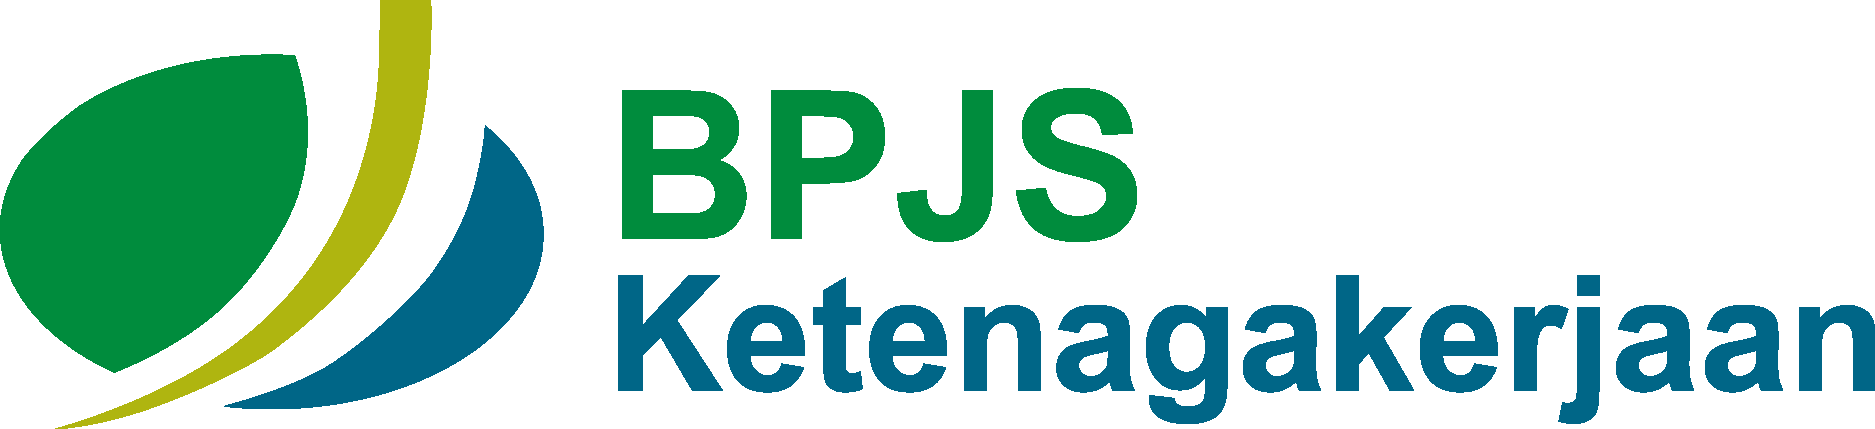 Logo BPJS Ketenagakerjaan Vector